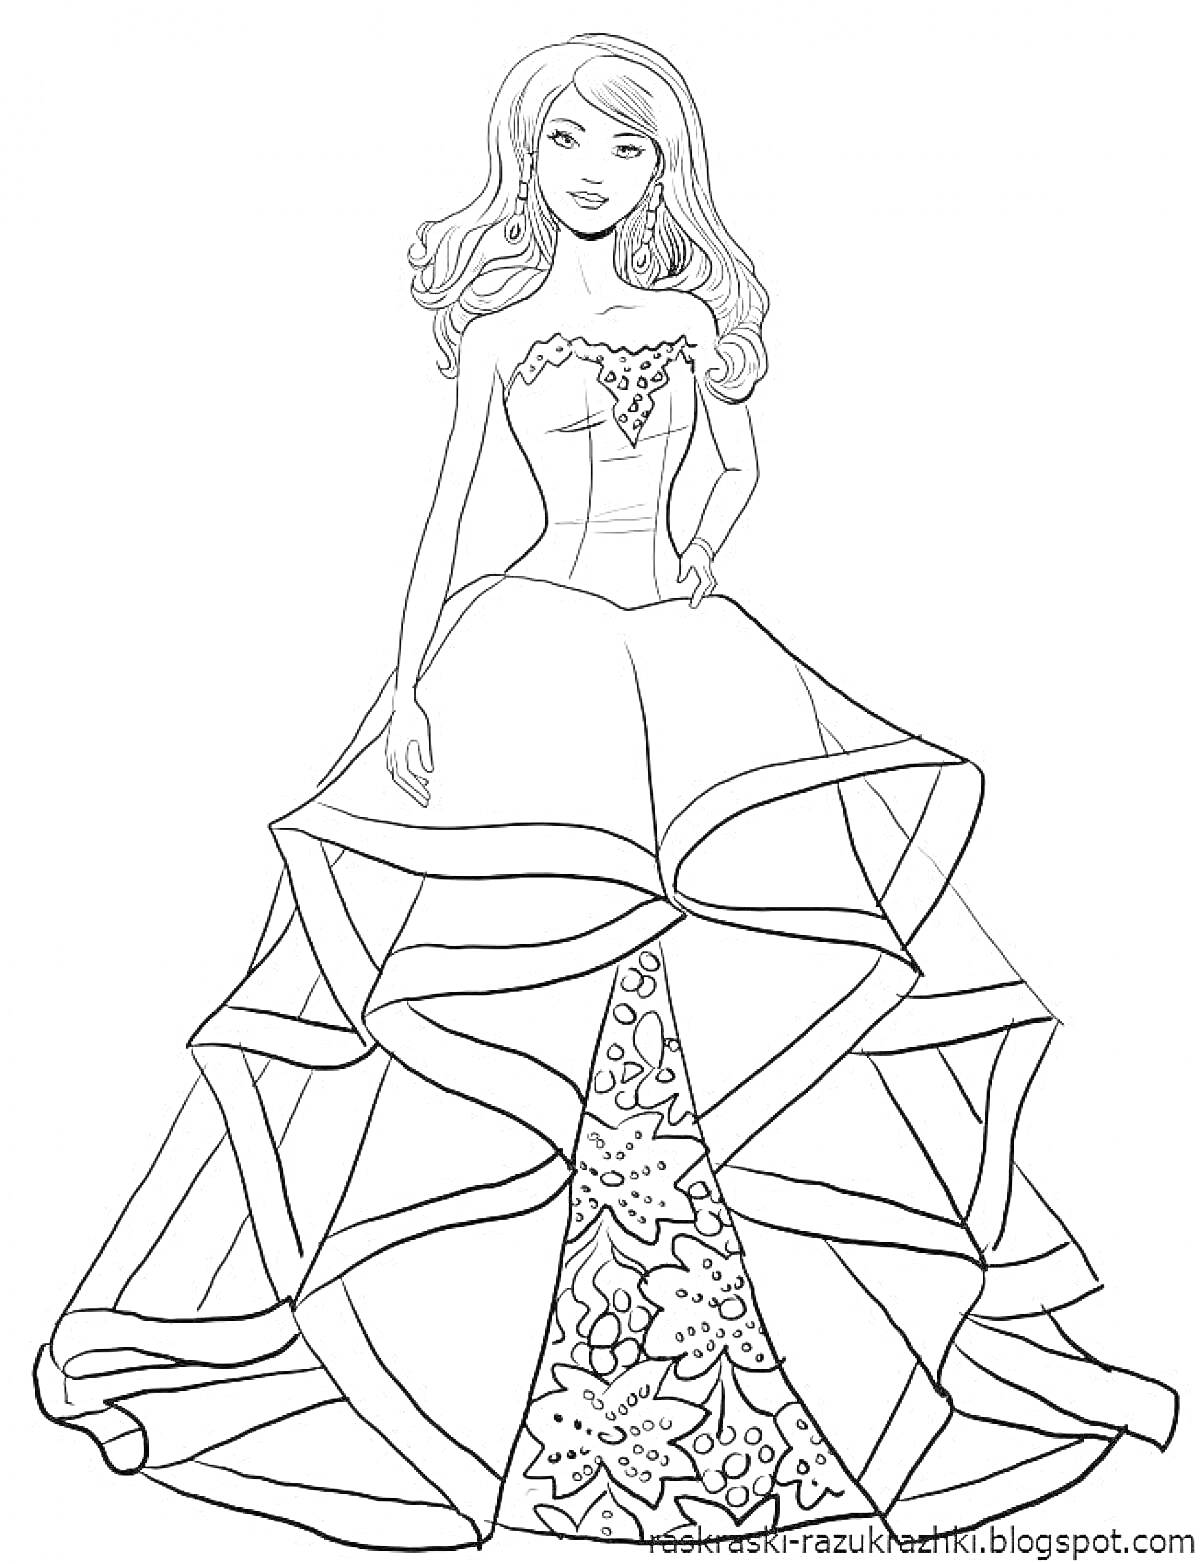 Раскраска Принцесса в длинном пышном платье с цветочным узором и волнистой юбкой